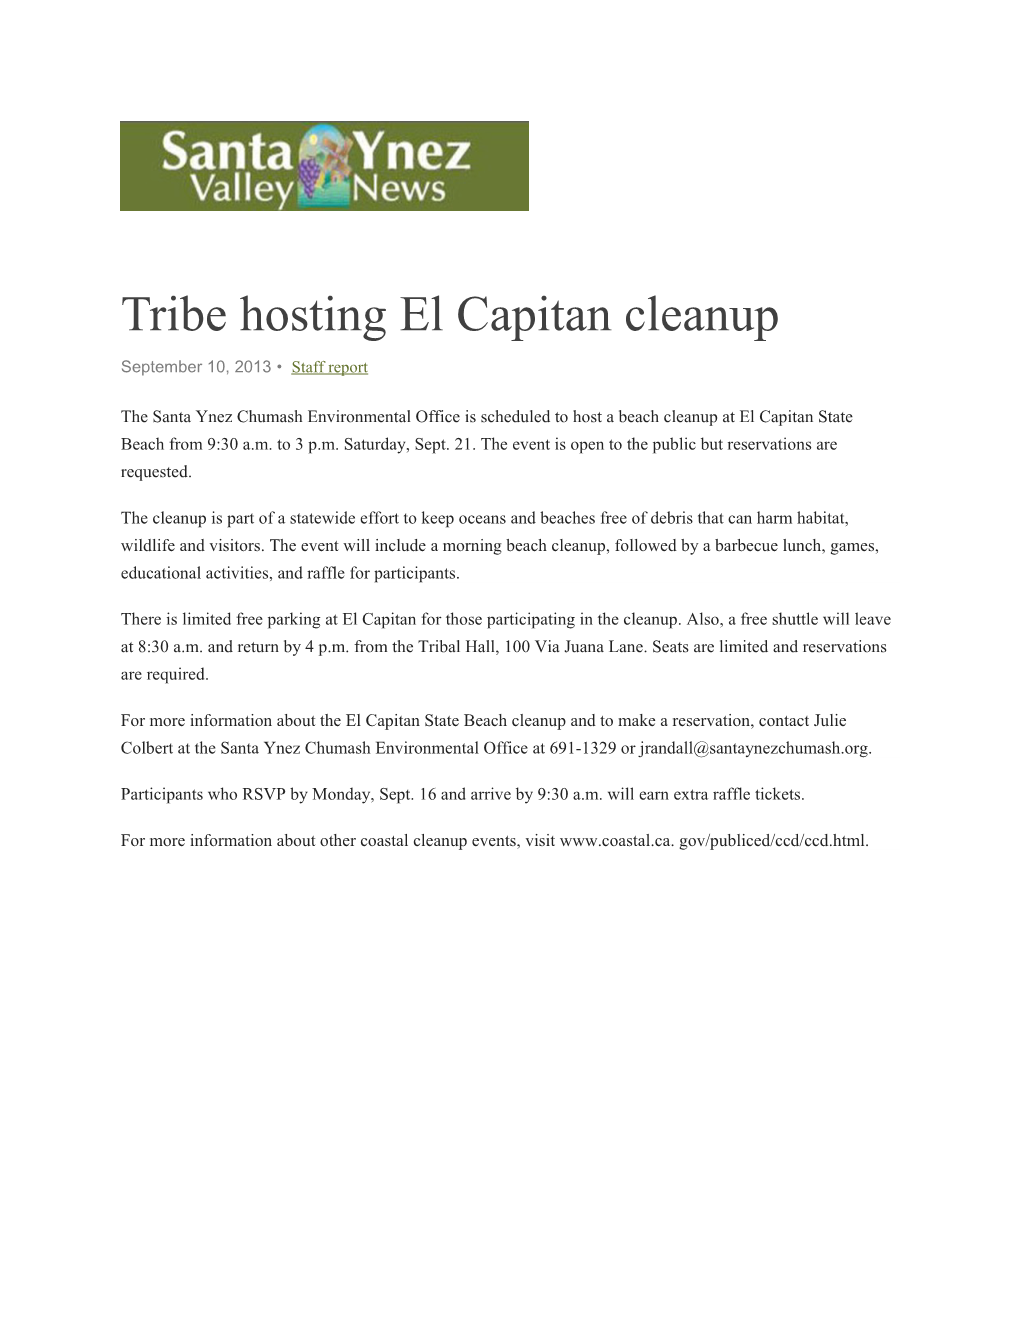 Tribe Hosting El Capitan Cleanup